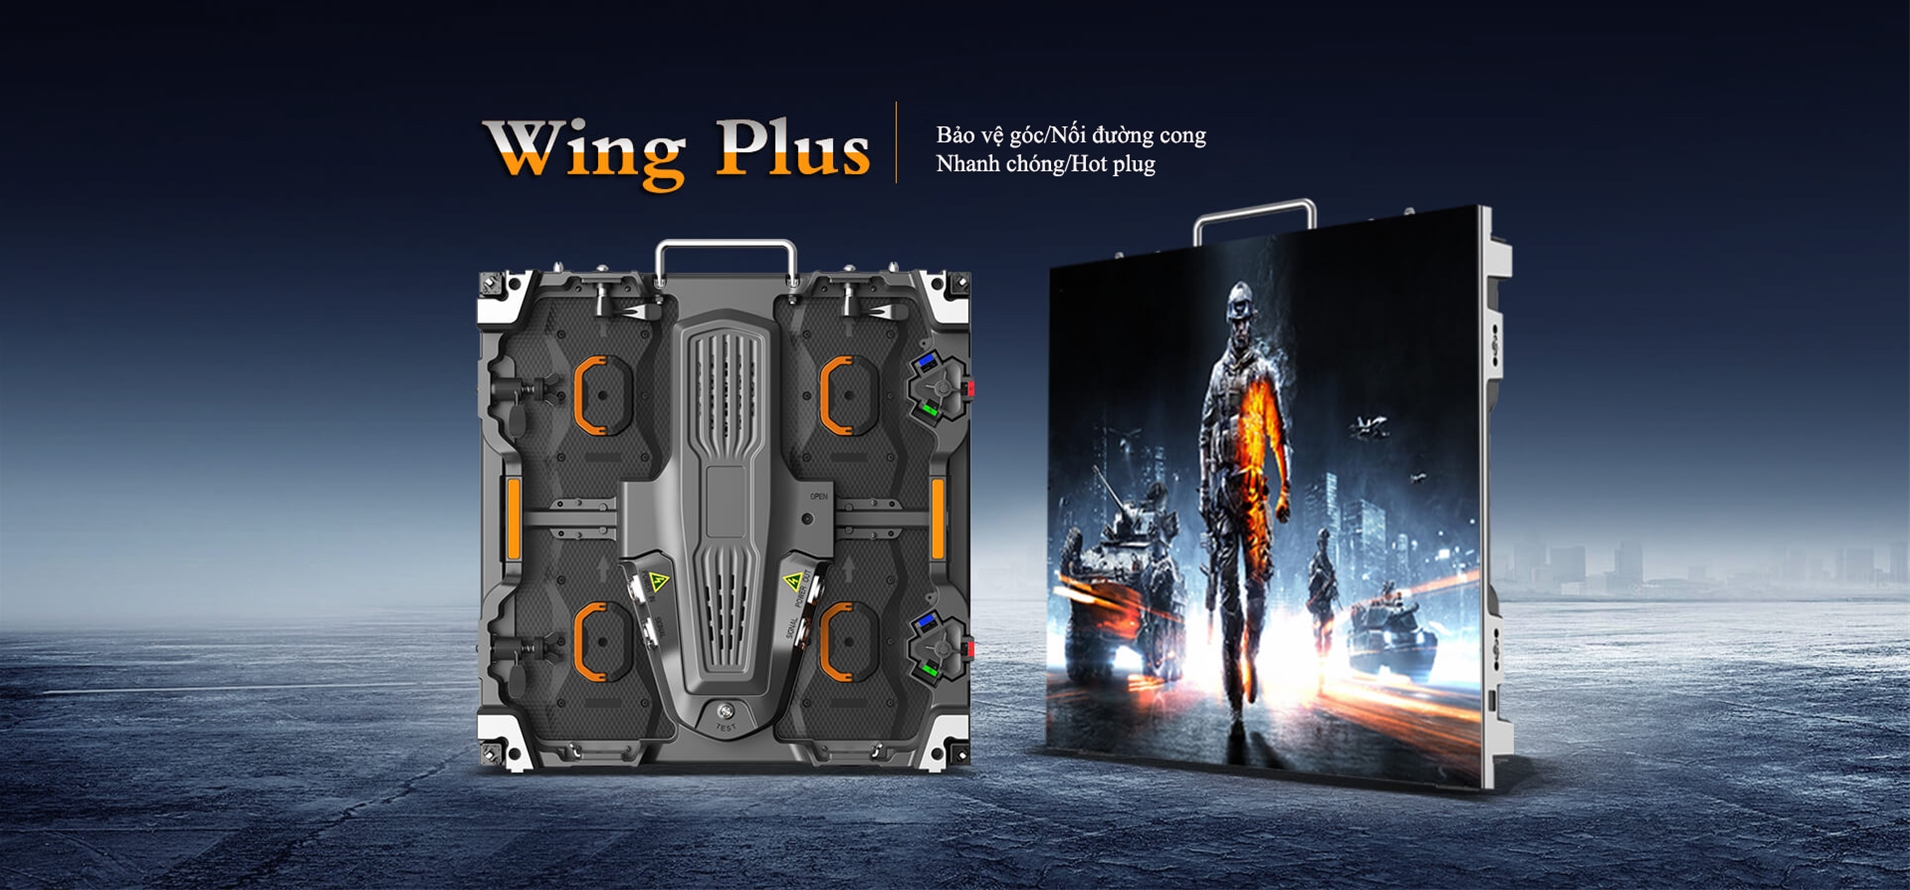 Màn hình LED sự kiện dòng Wing Plus của hãng Esdled 1